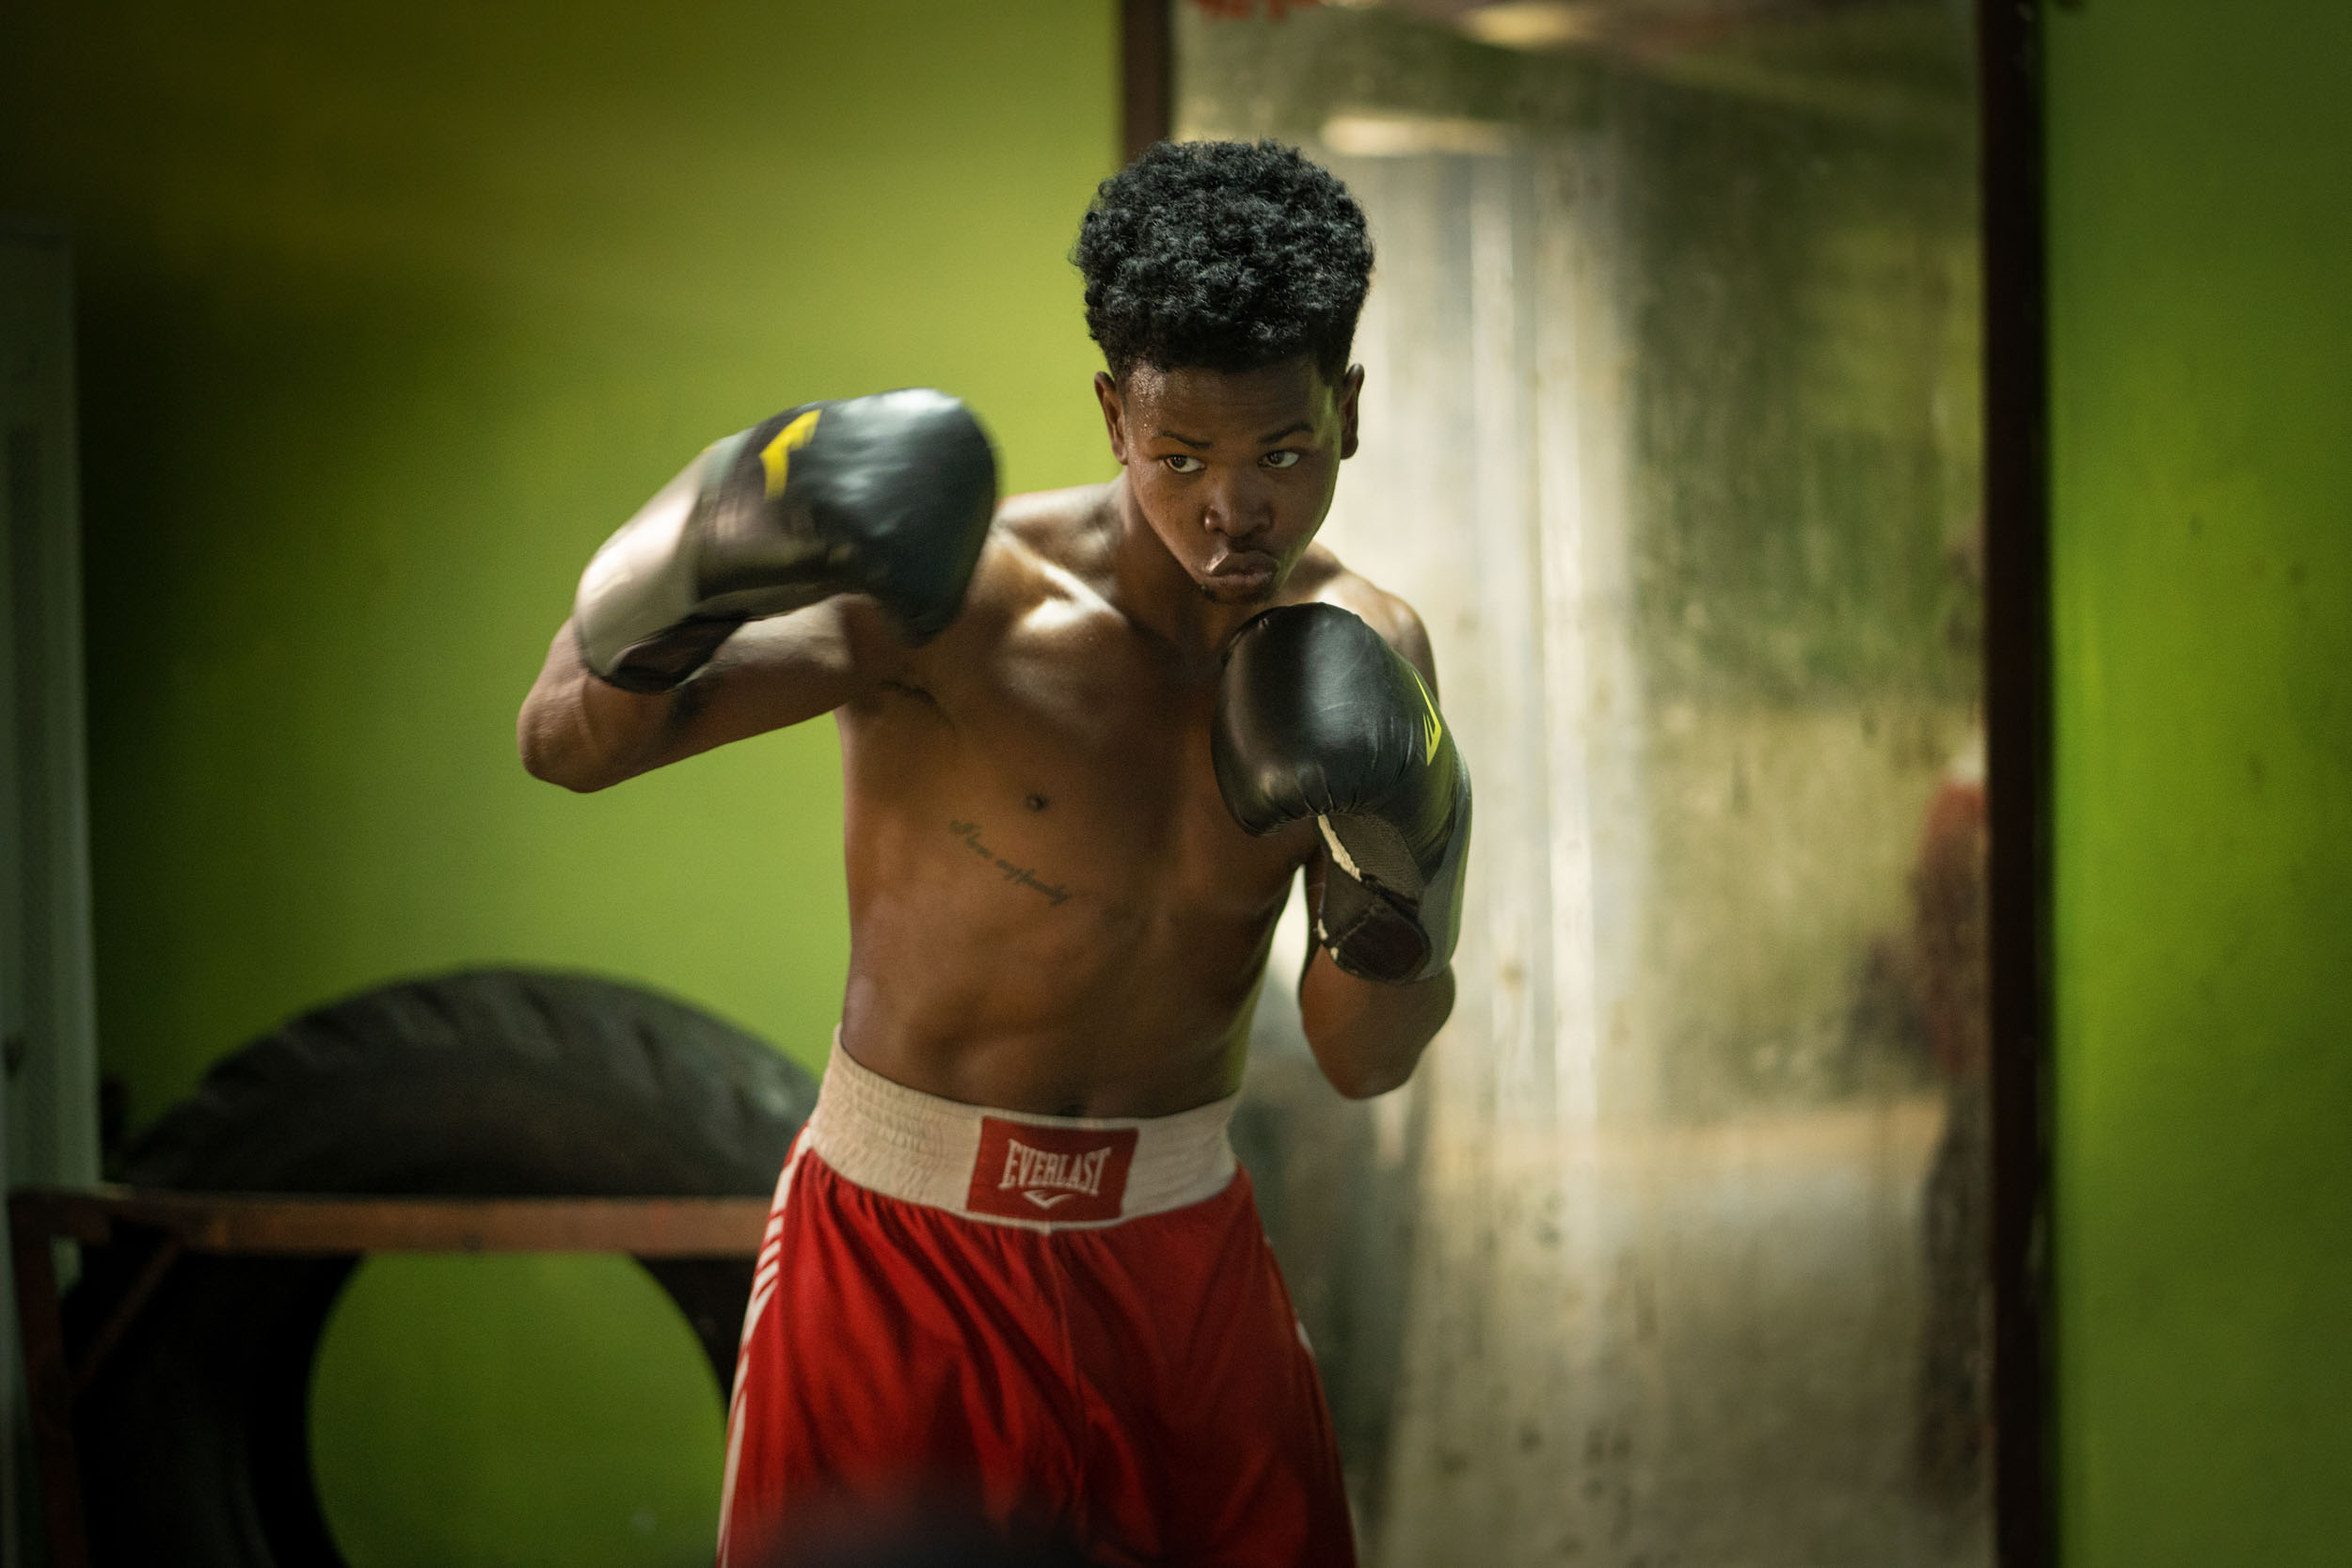 Boxing-Cuba-Havana-gym-11-web.JPG